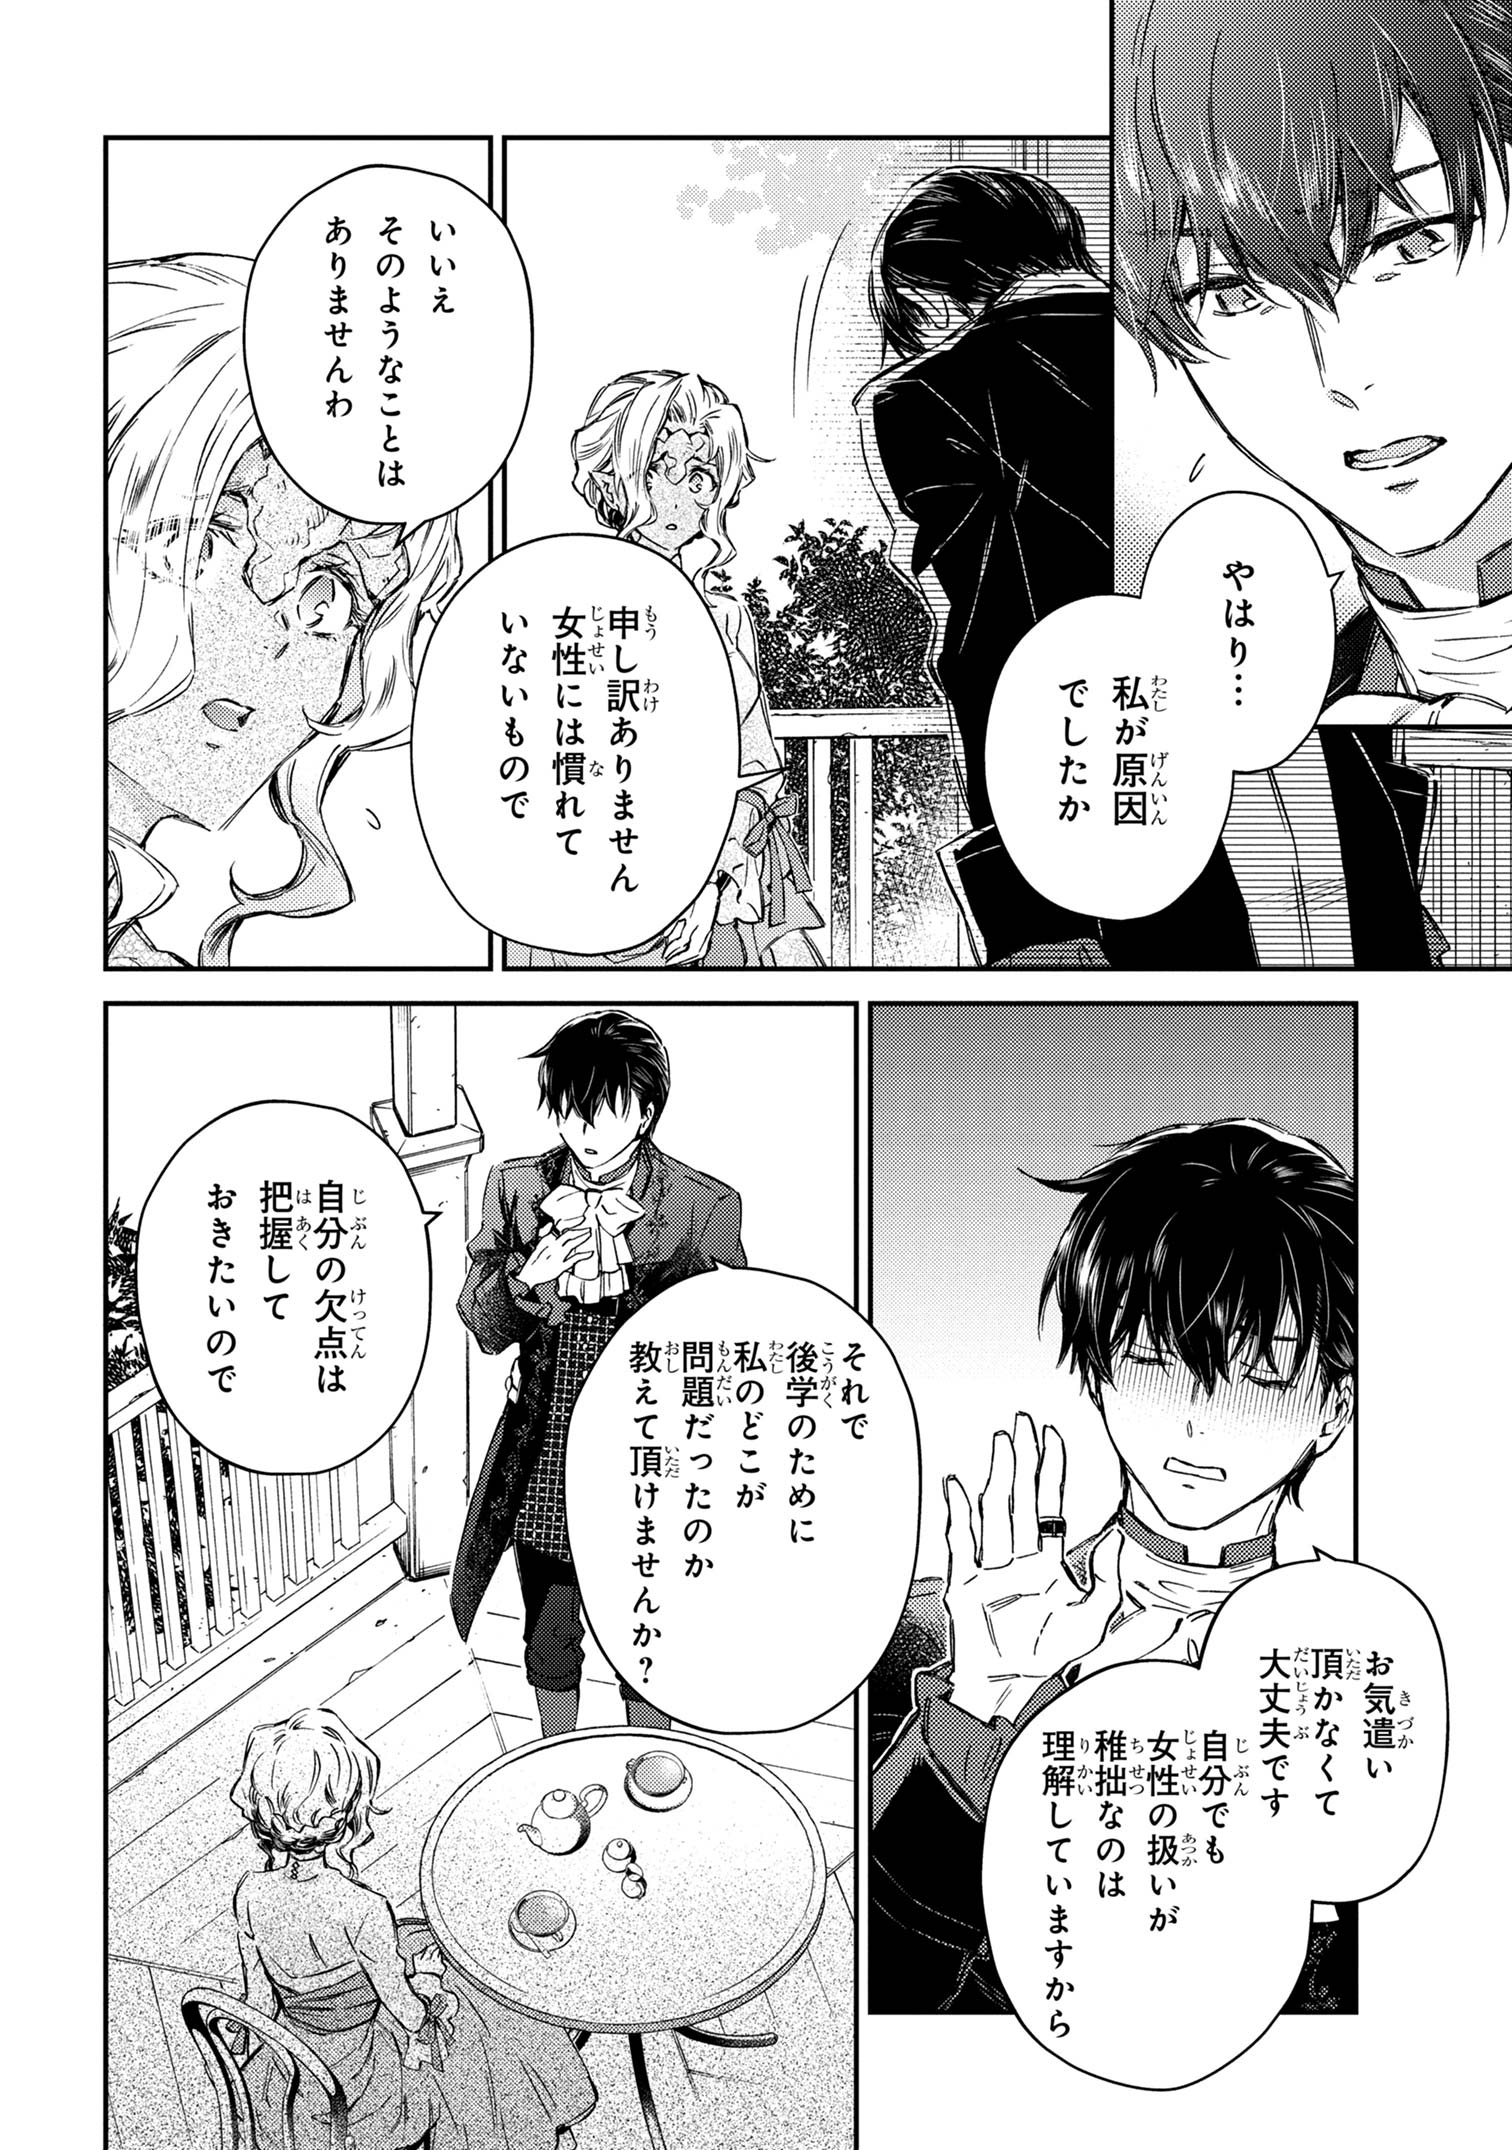 Goblin Reijou to Tensei Kizoku ga Shiawase ni Naru Made - Chapter 1.5 - Page 1